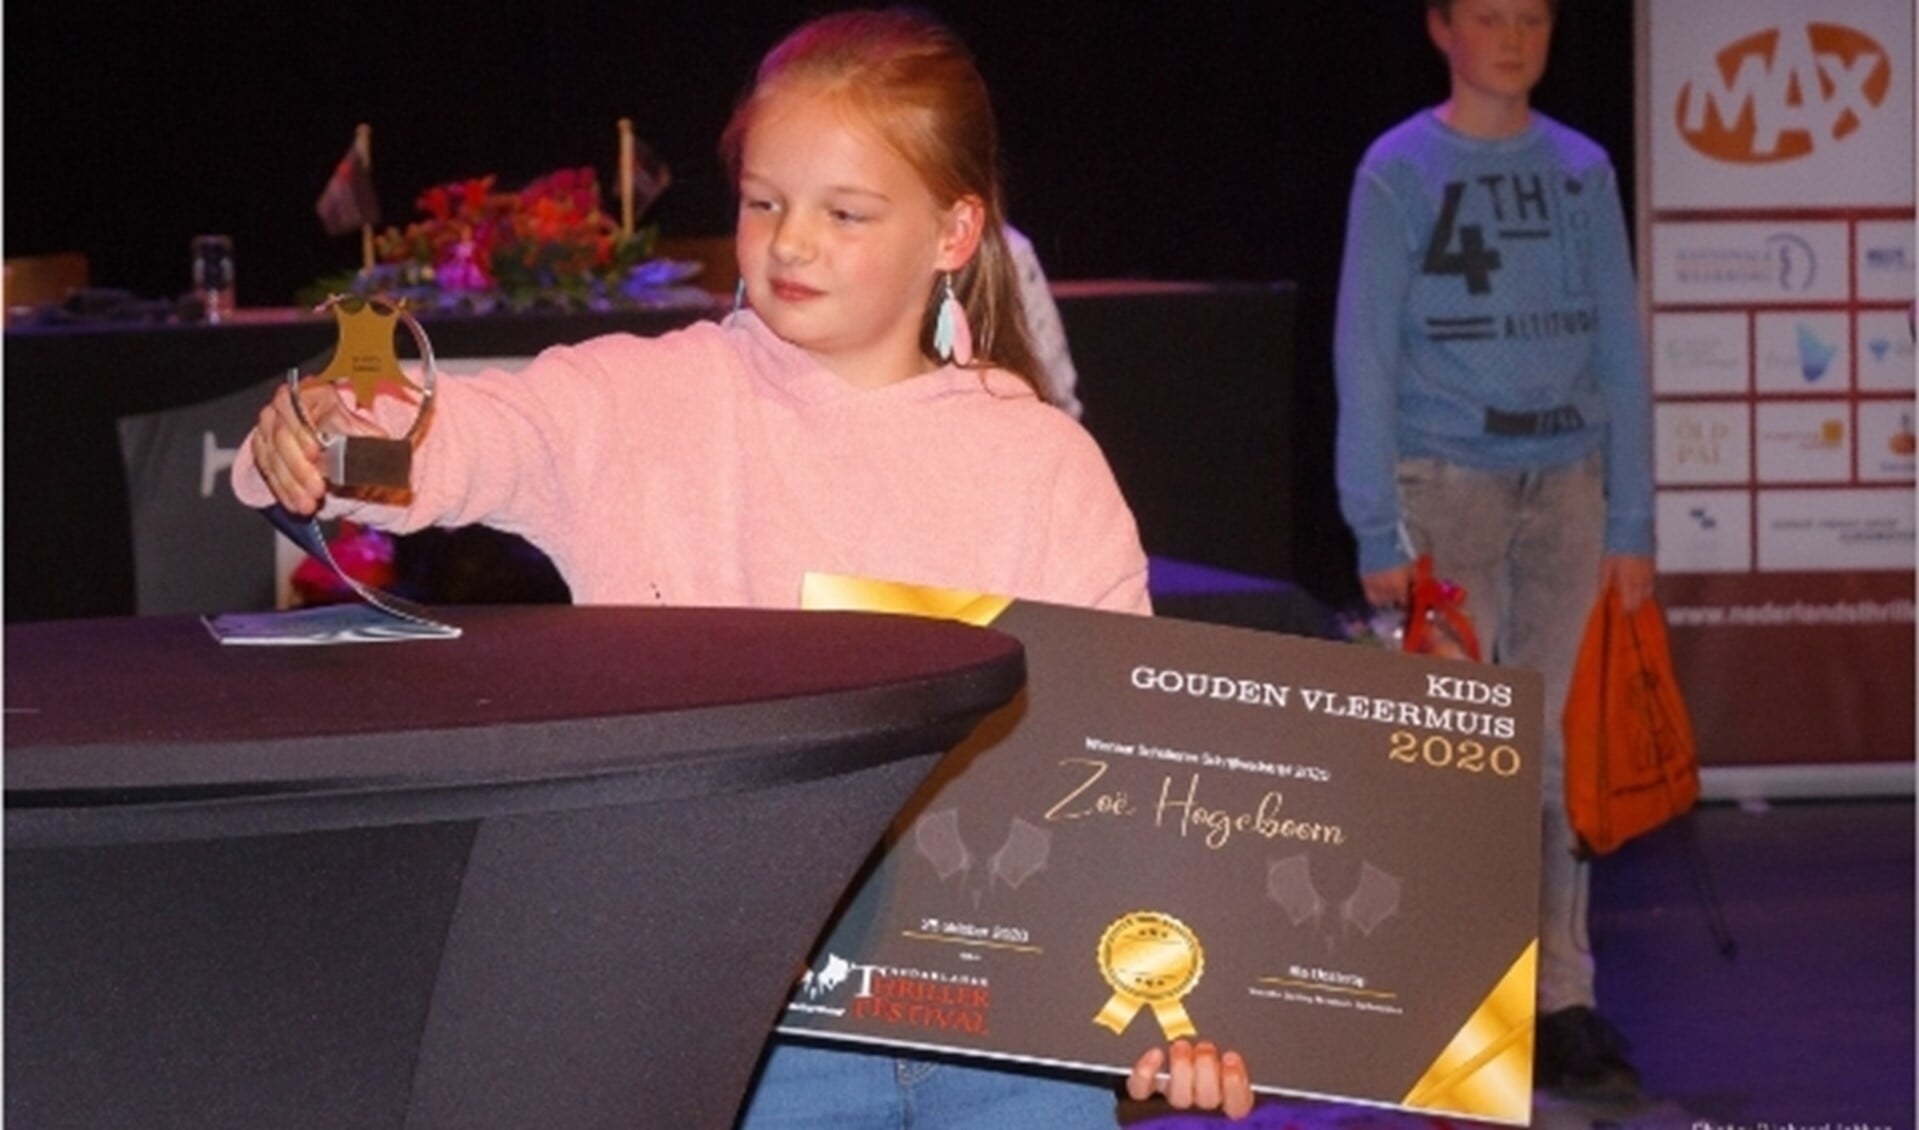 Zoë Hogeboom wint de Kids Gouden Vleermuis. 